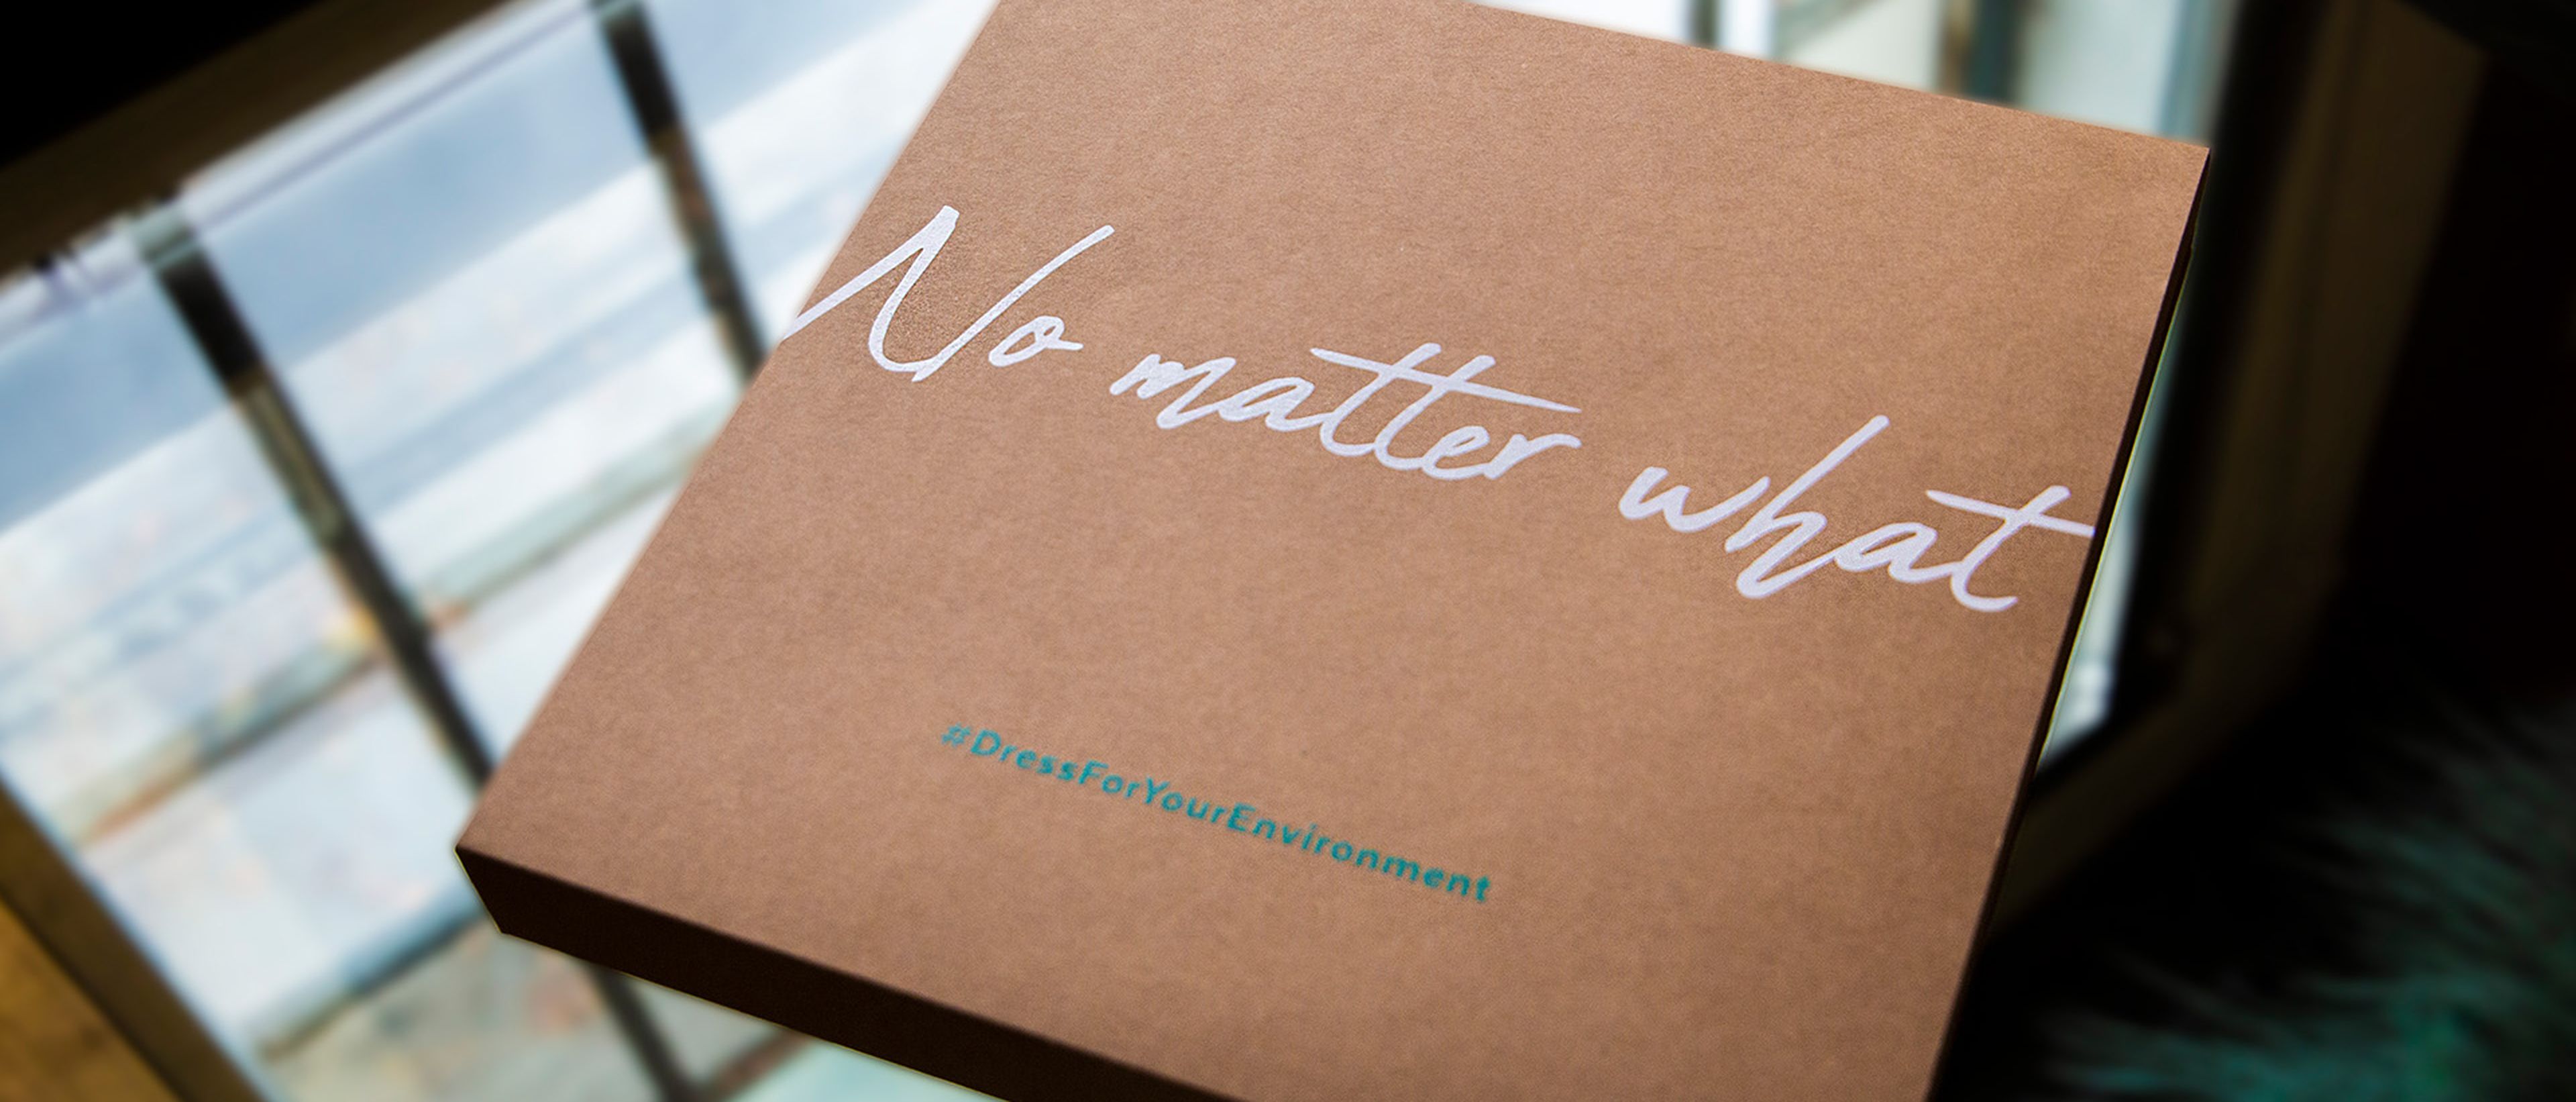 Tencel Influencer Box mit Aufschrift "No matter what"